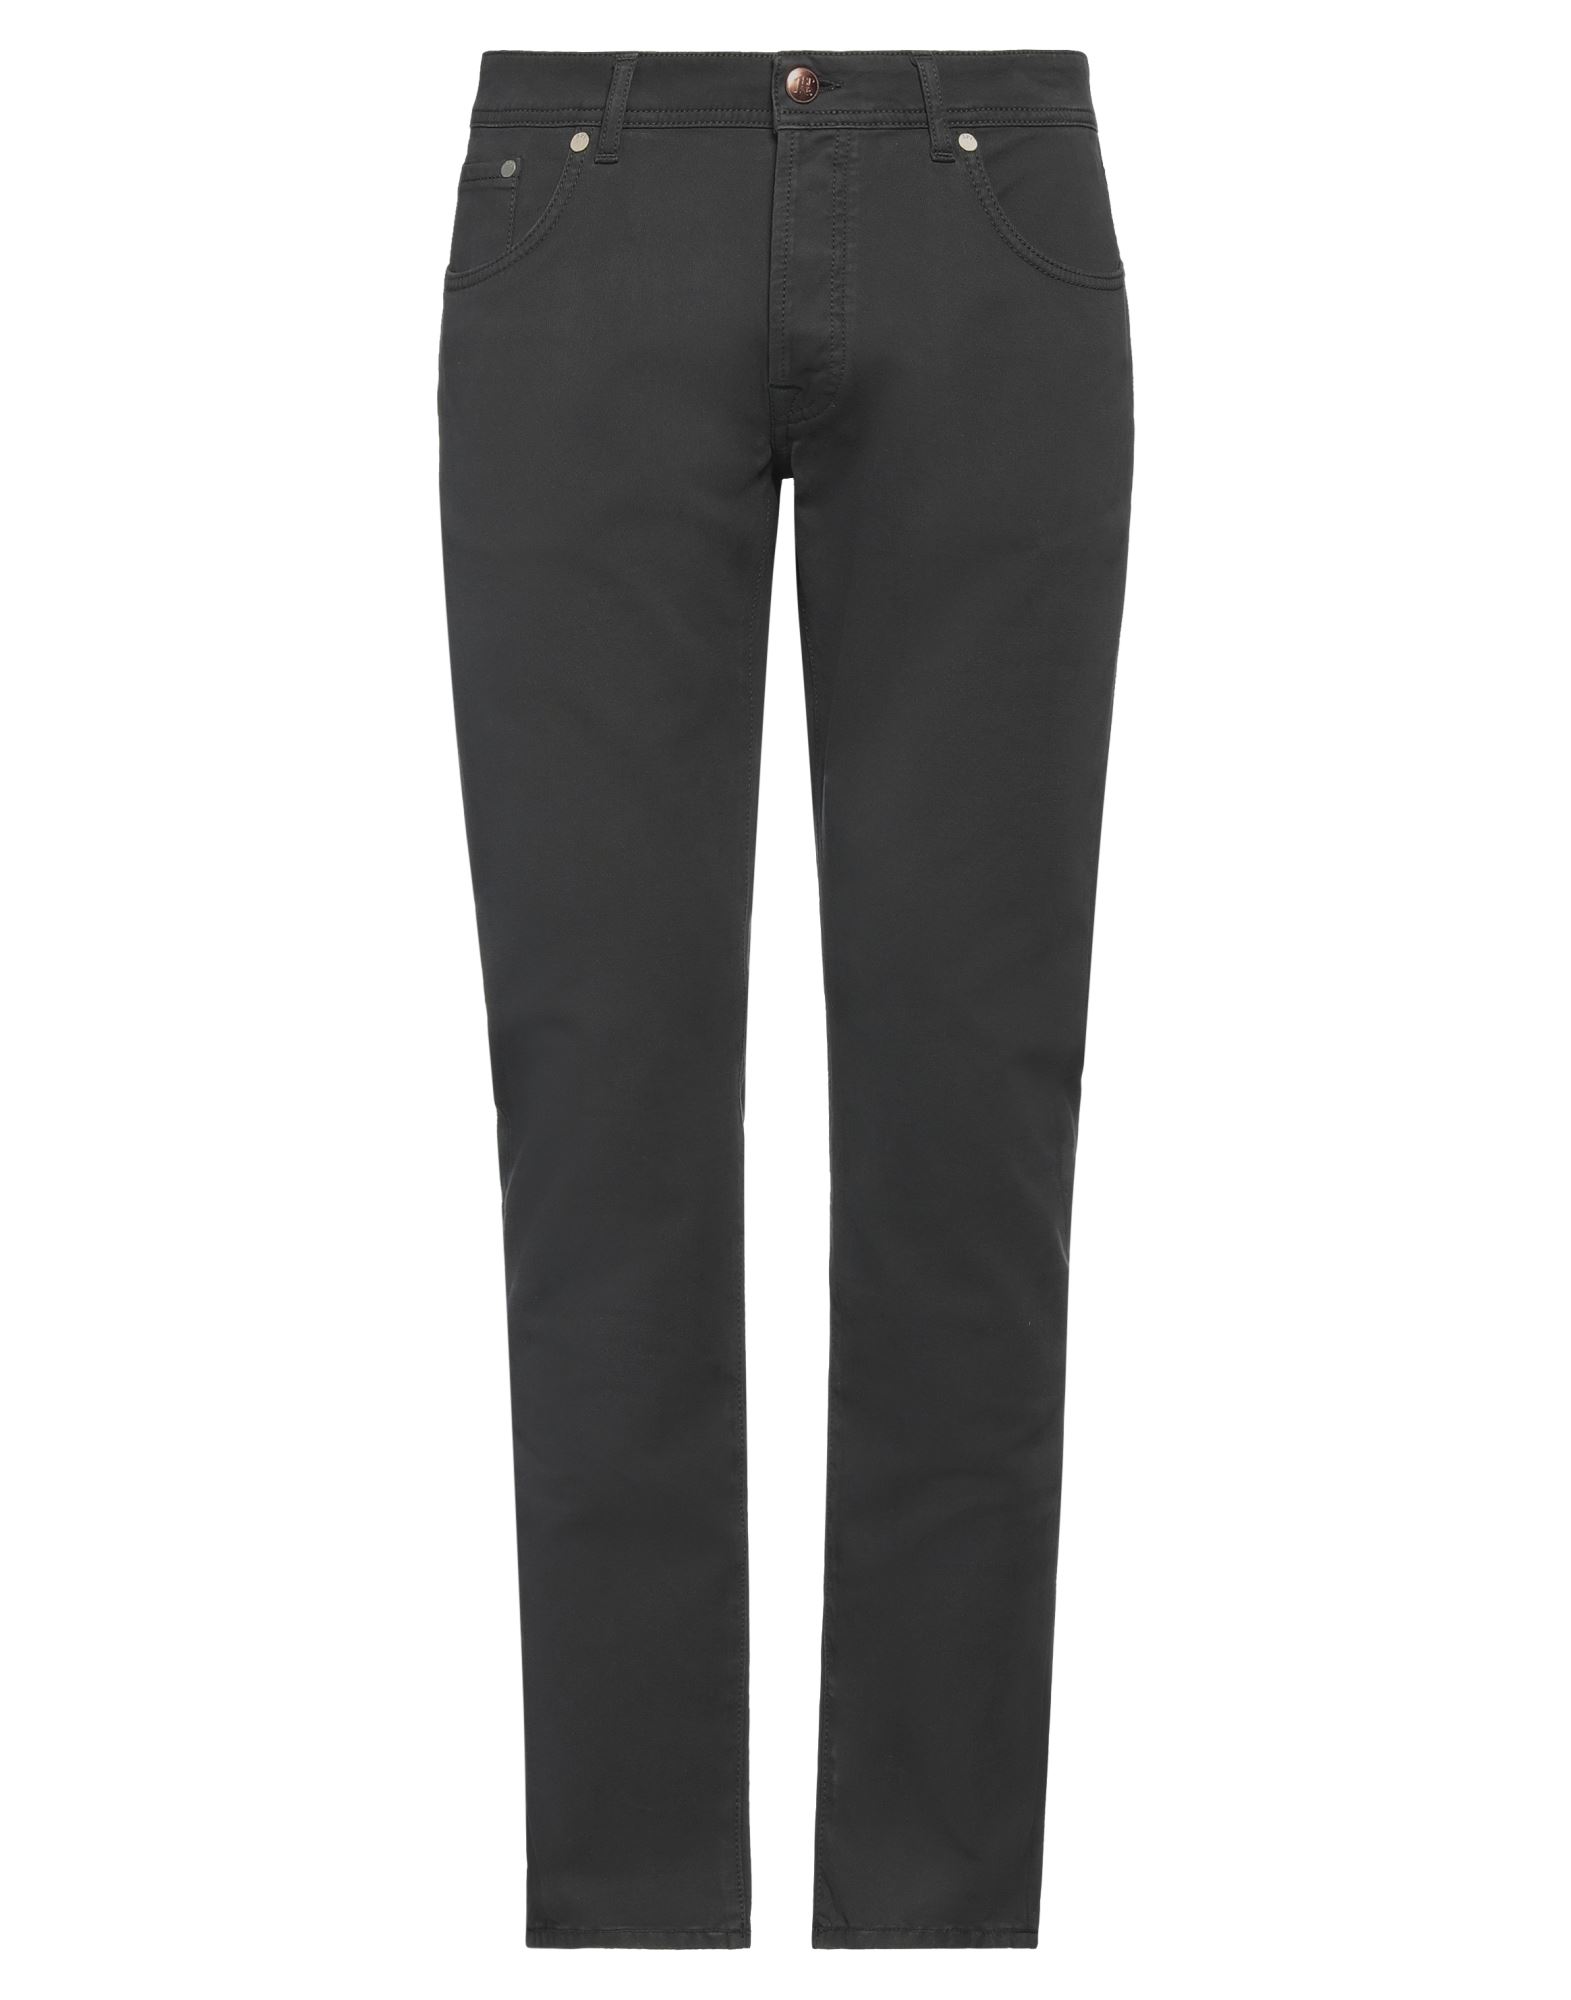 Sp1 Pants In Steel Grey